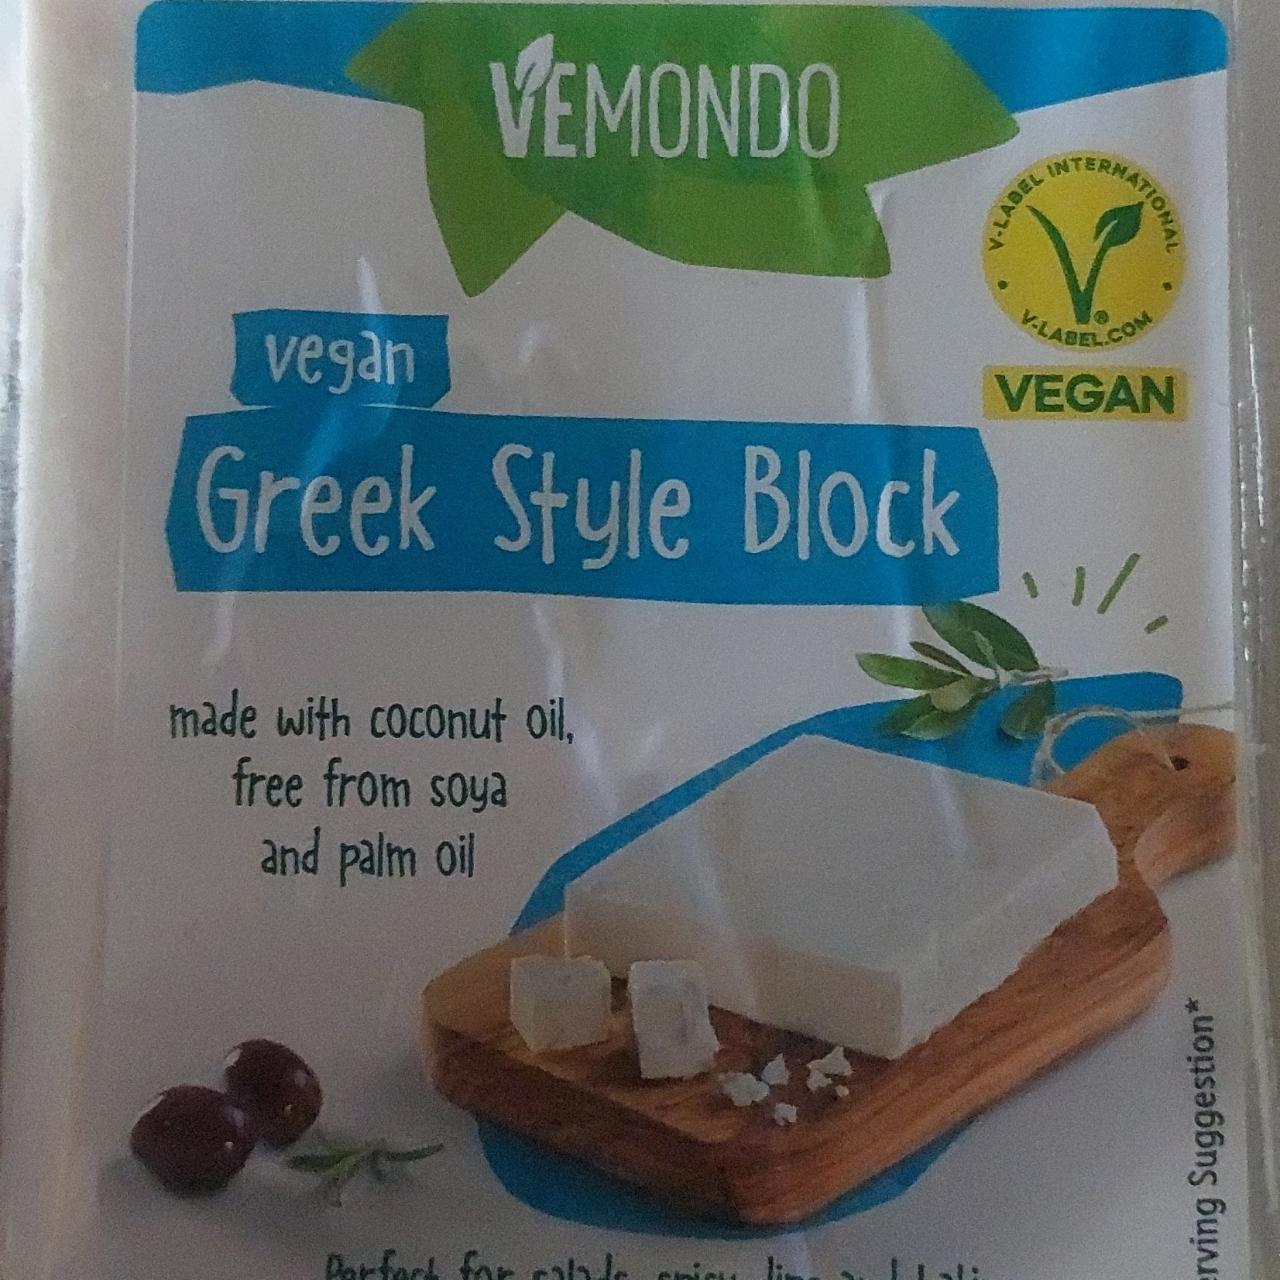 Képek - Vegan greek style block Vemondo